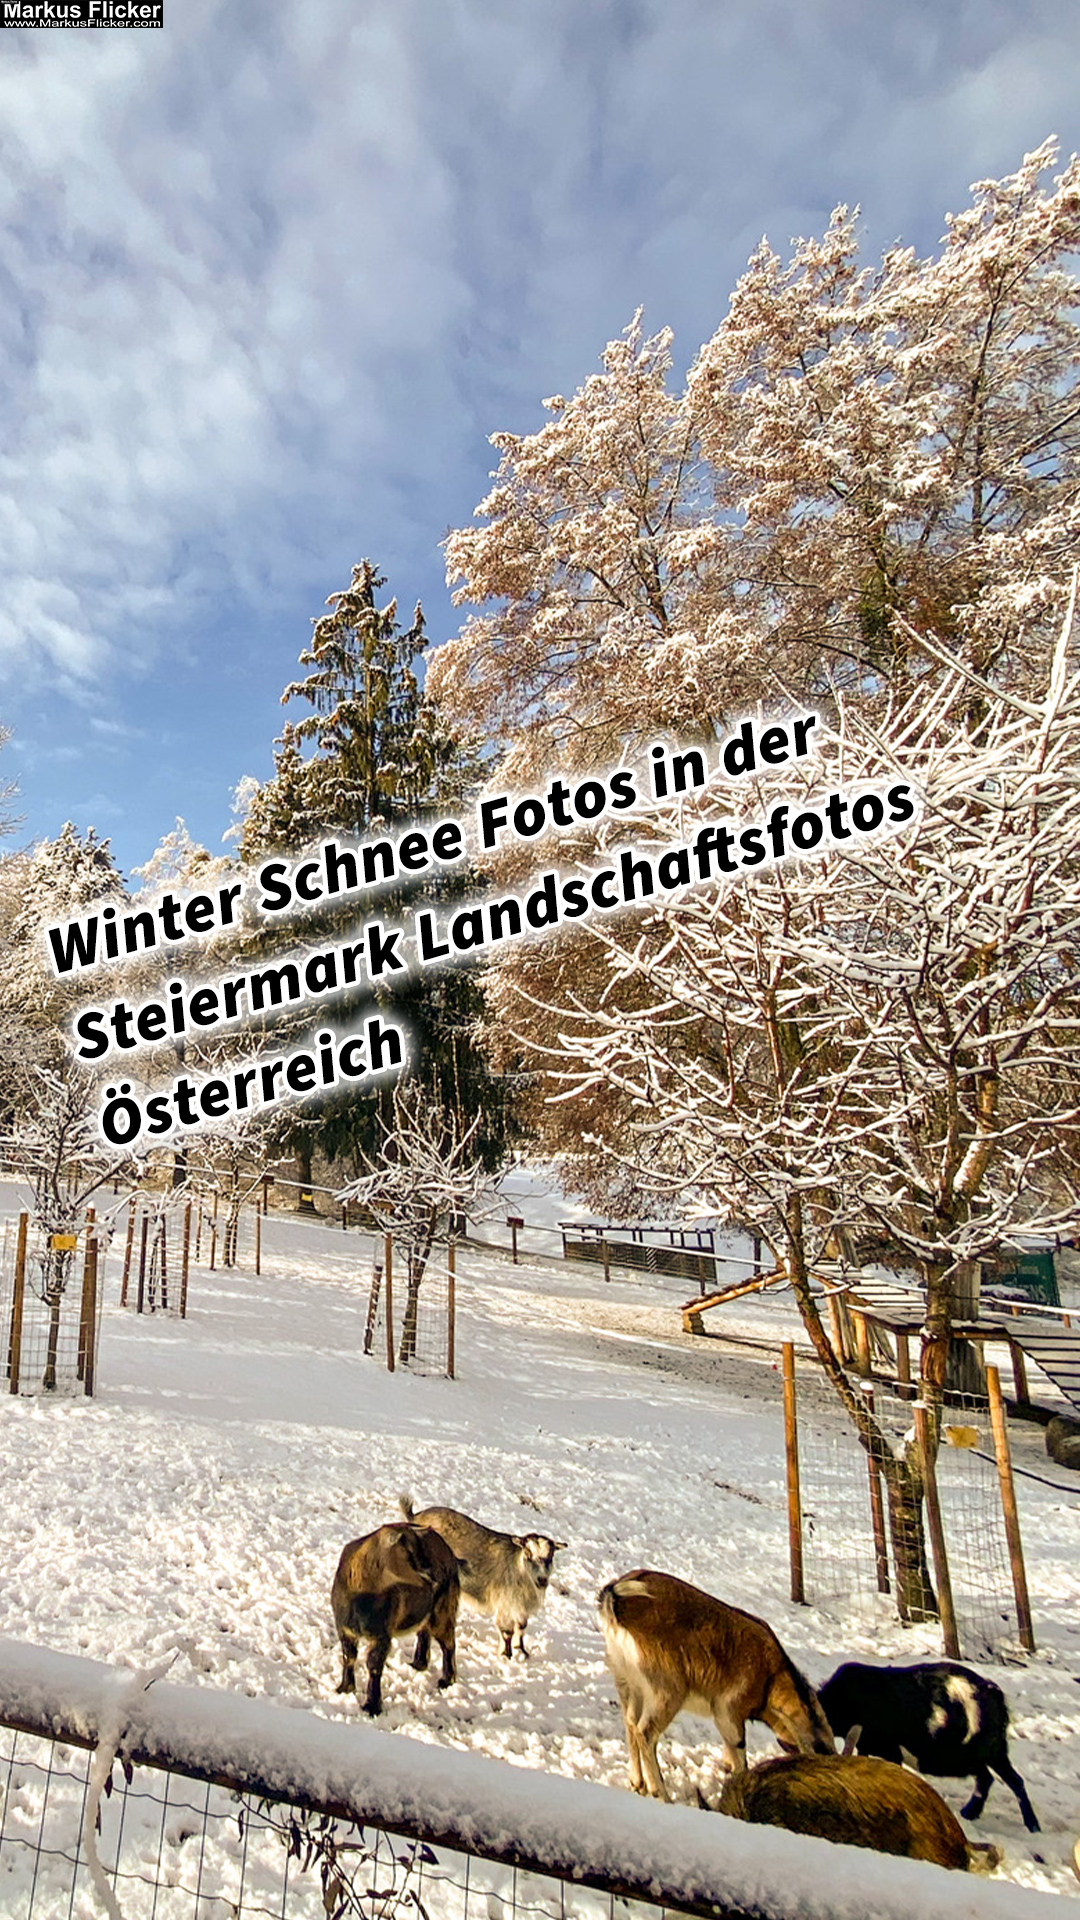 Winter Schnee Fotos Natur mit Smartphone oder Profi Kamera in der Steiermark Landschaftsfotos Österreich